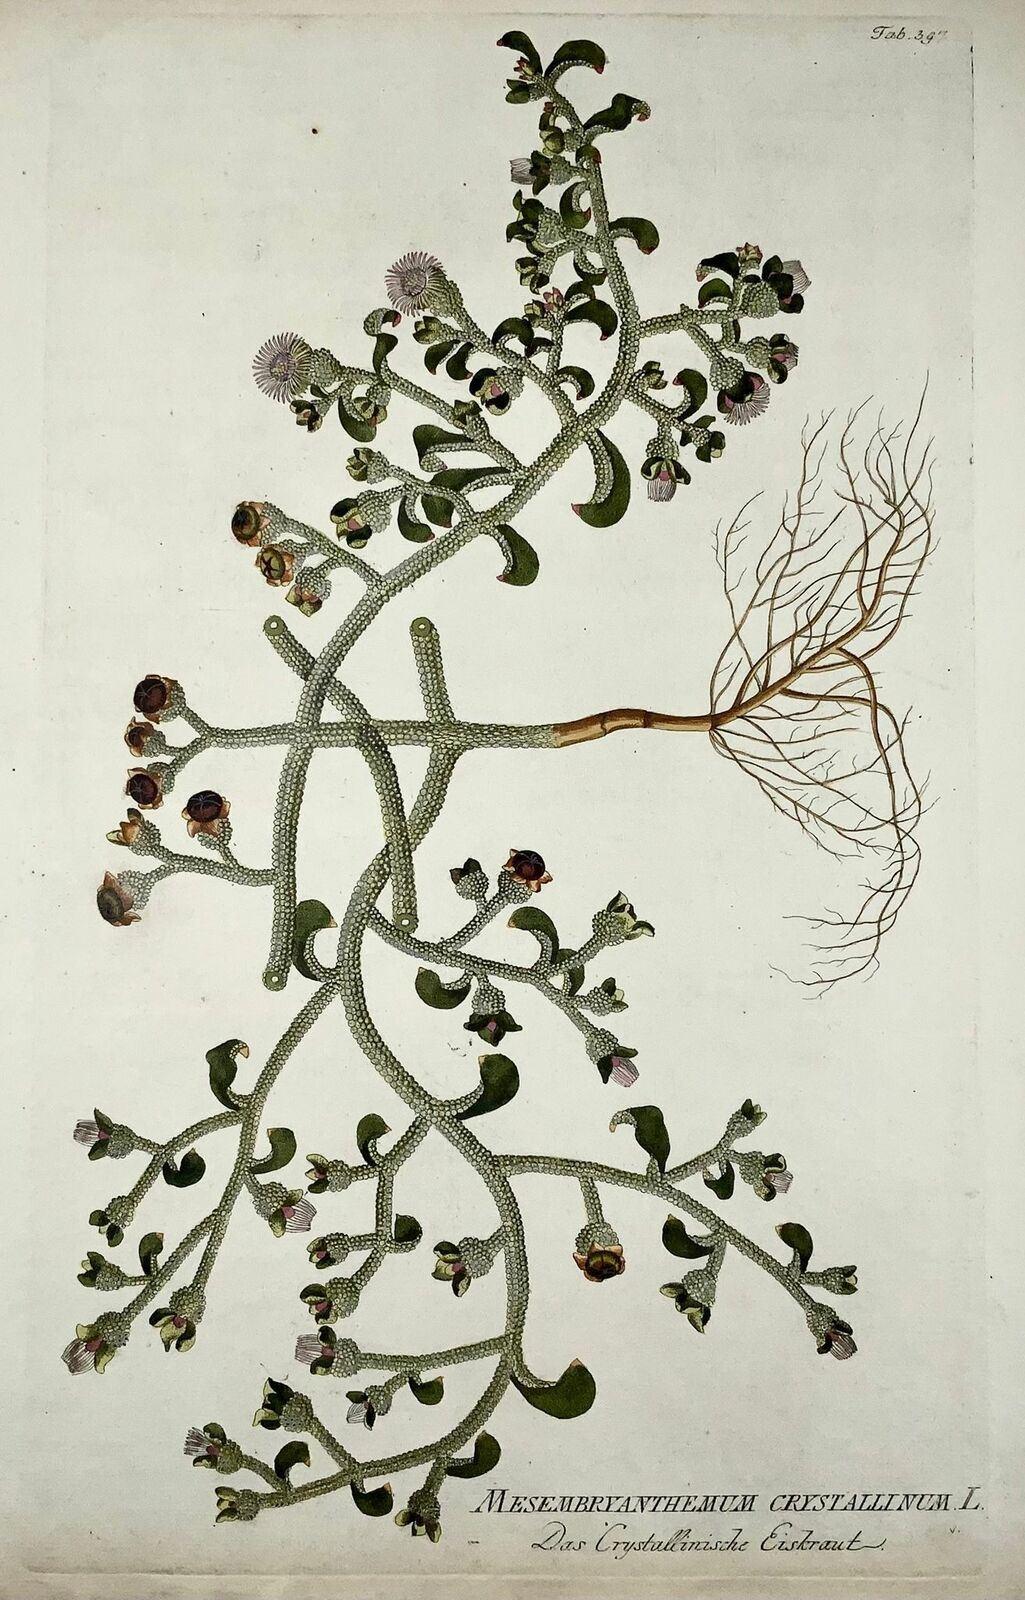 J. J. Plenck

Icones plantarum medicinalium, Wien 1788 ff.

Blattgröße 45 x 29 cm.

Referenzen Nissen, BBI 1536, Große Blumenbücher 70 u. de Belder 281

Joseph Jacob Plenck (Plencke in einigen Werken)  (1735-1807) war ein österreichischer Arzt und